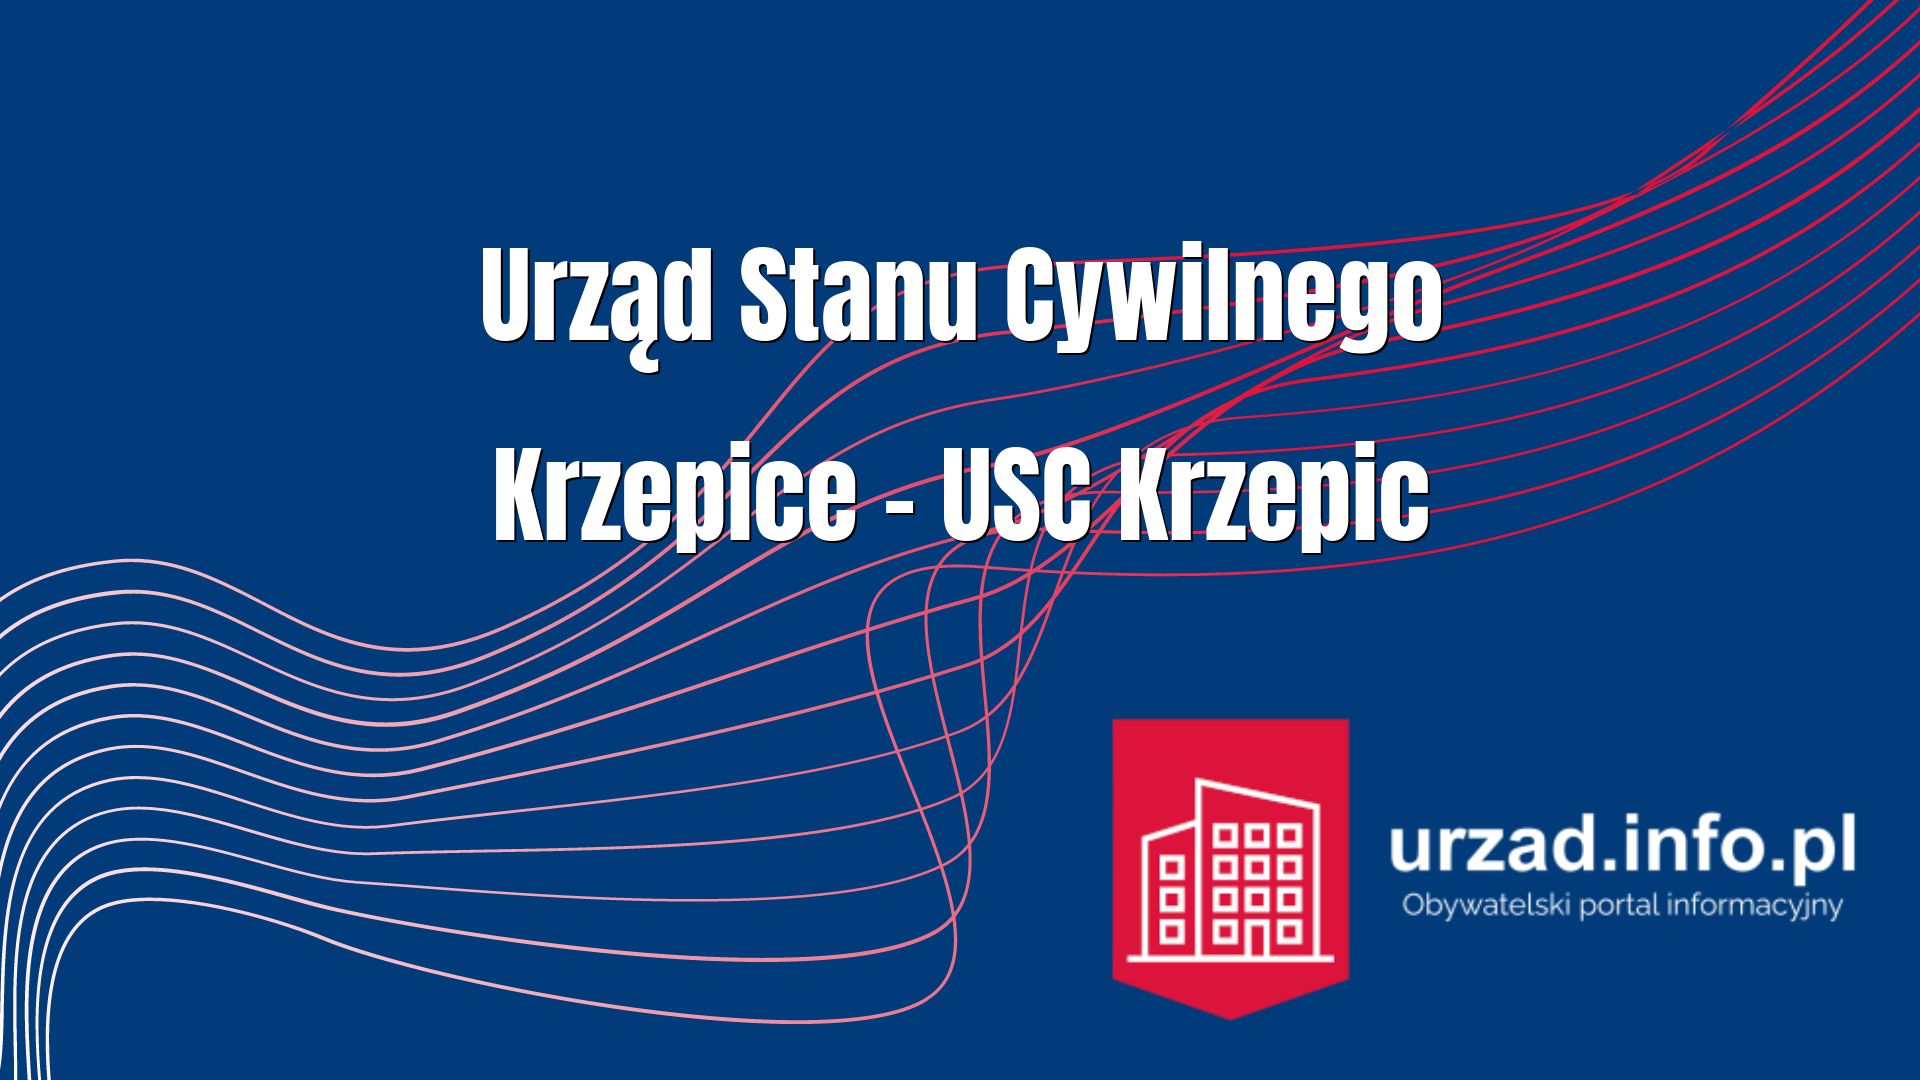 Urząd Stanu Cywilnego Krzepice – USC Krzepic